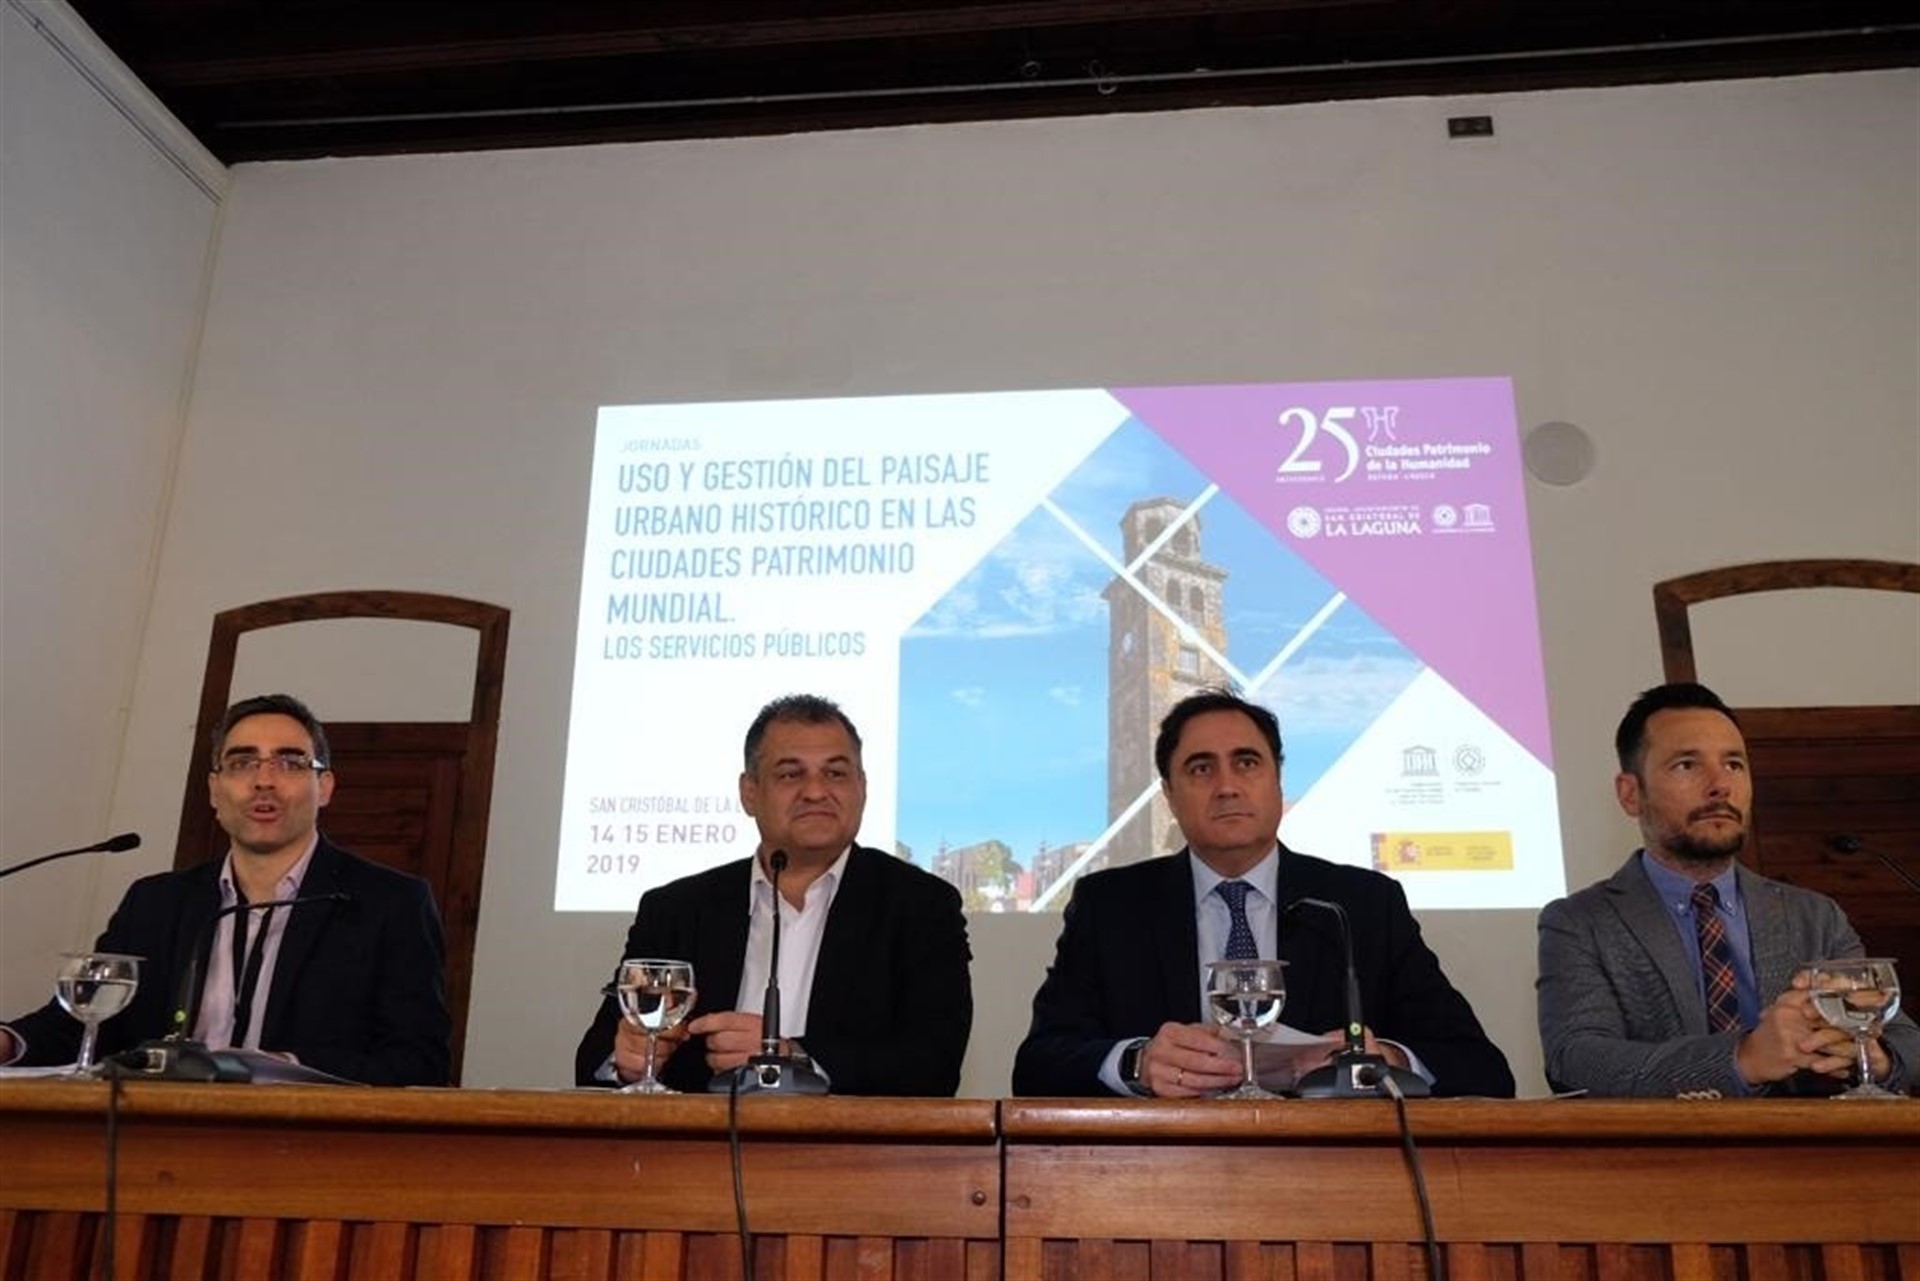 El segundo por la derecha, el alcalde de Cuenca y presidente de Ciudades Patrimonio, Ángel Mariscal.